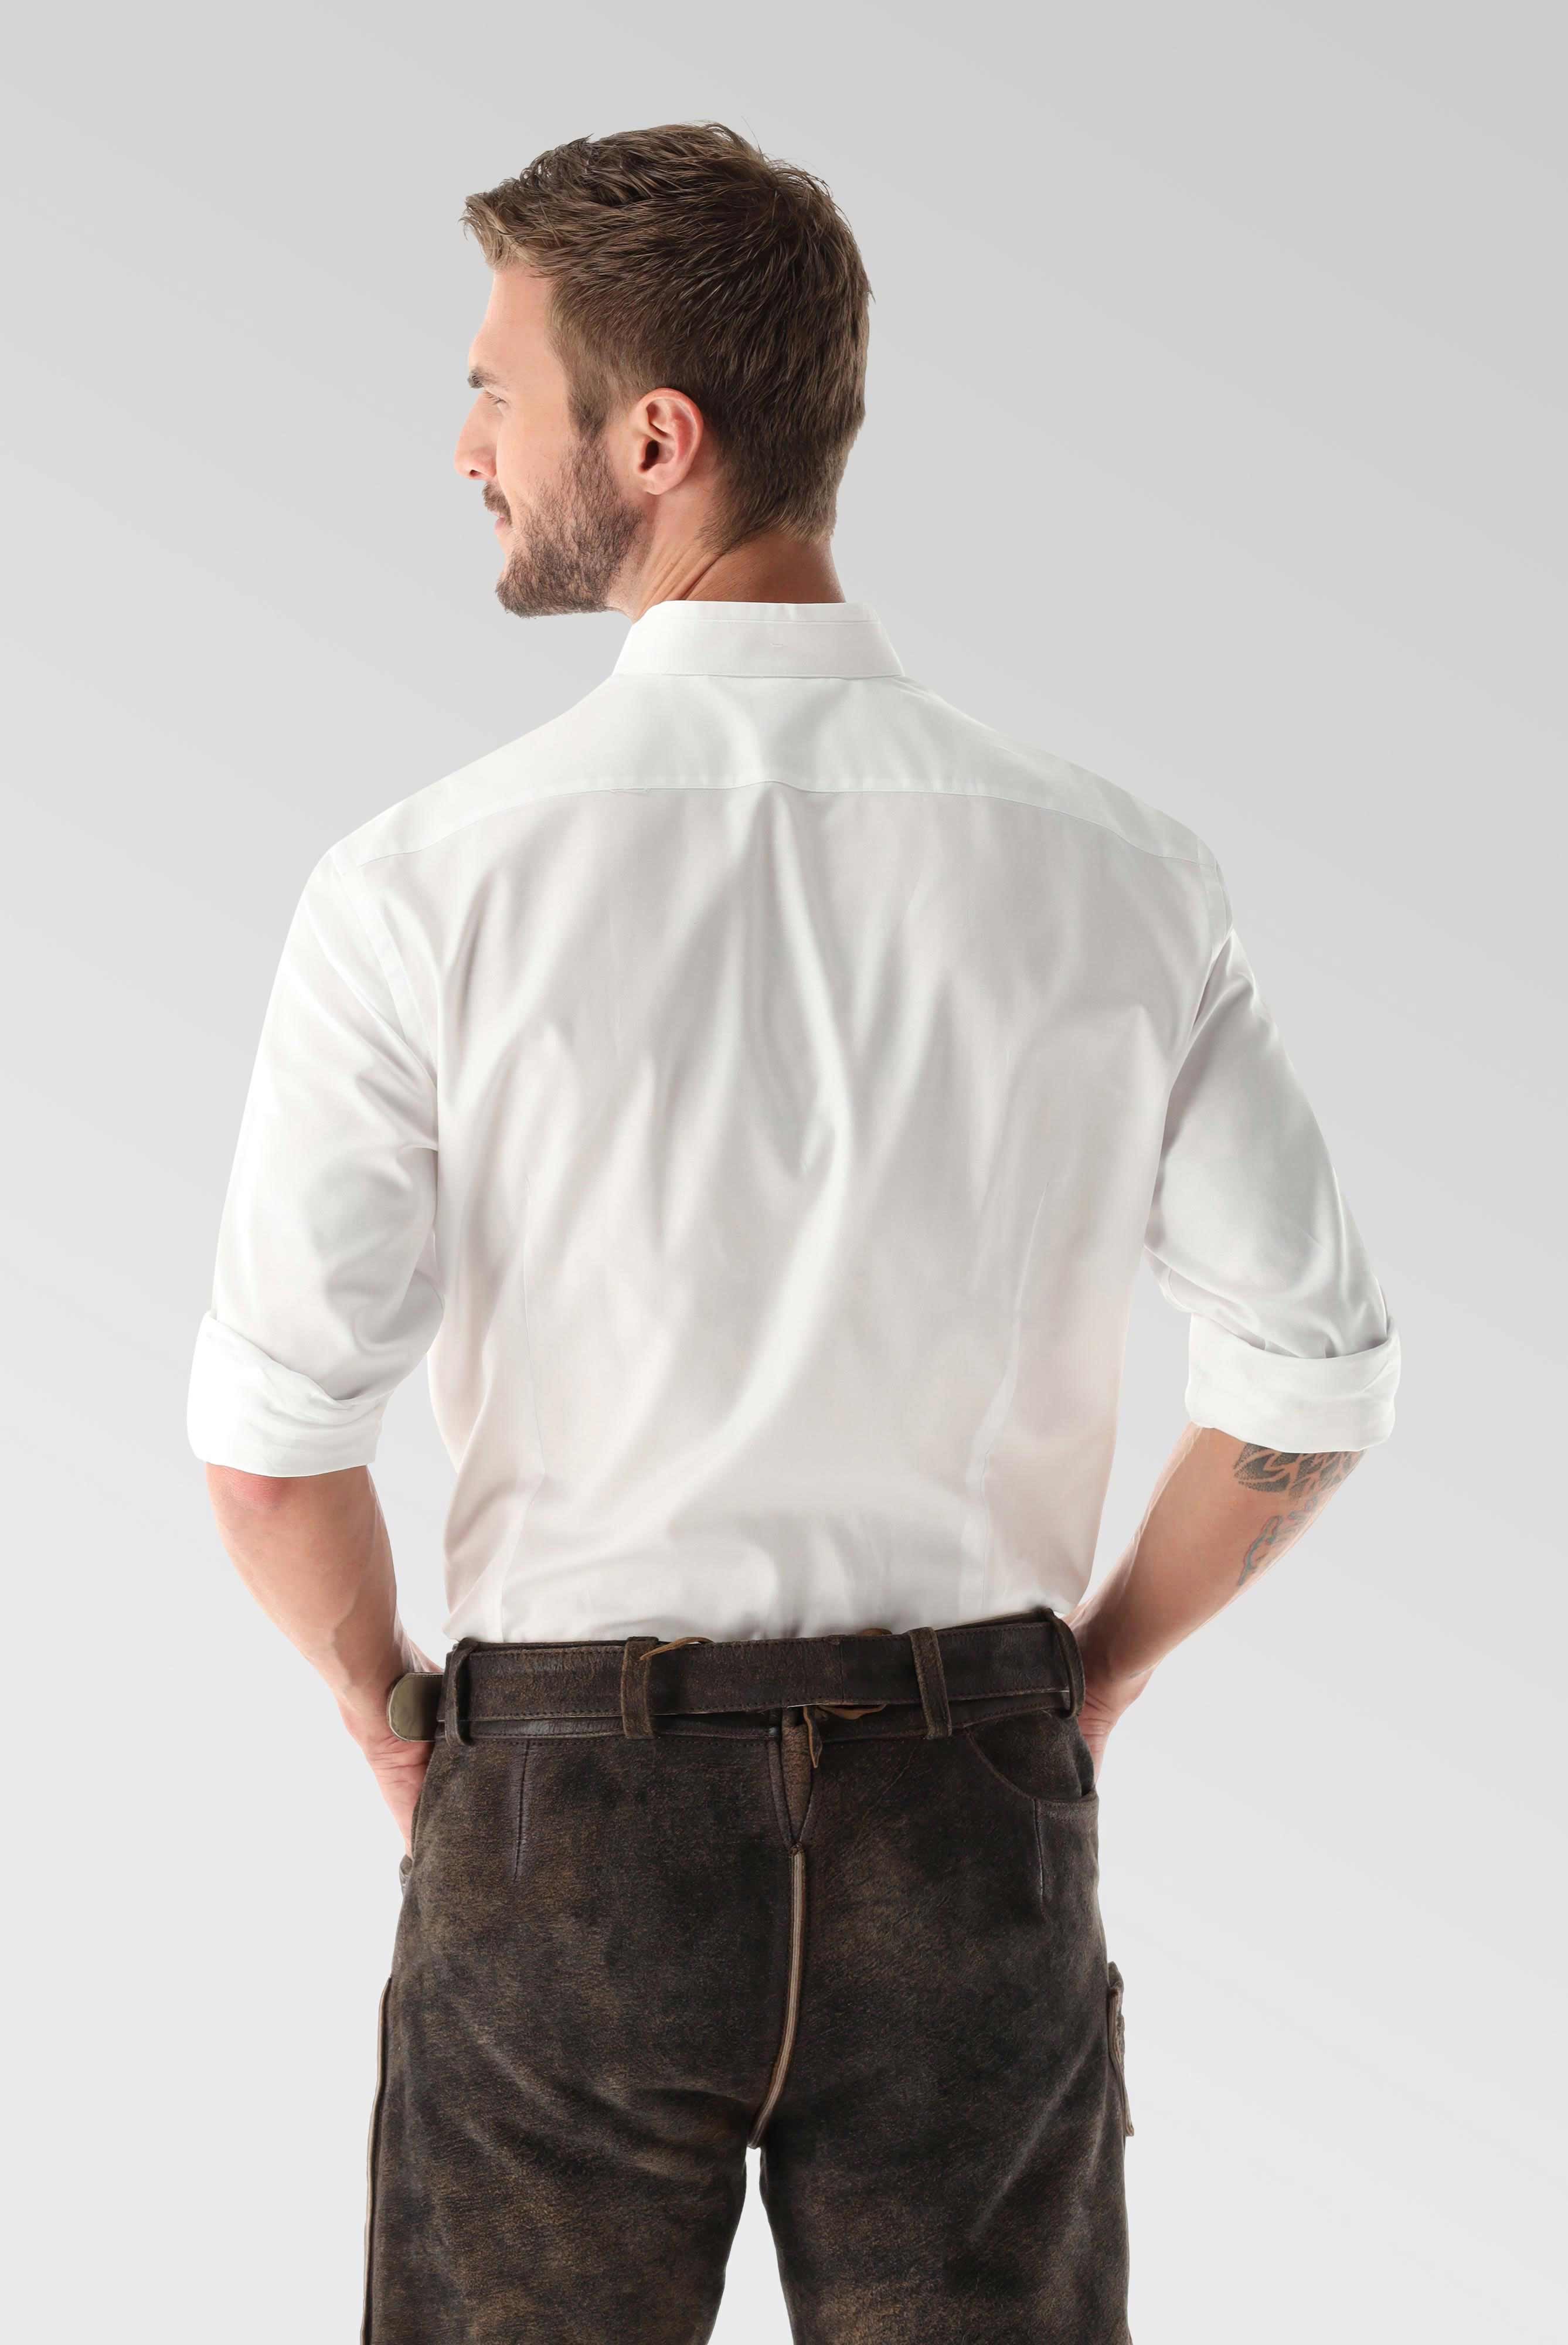 Festliche Hemden+Oxford Trachtenhemd Tailor Fit+20.2081.8Q.150251.000.39